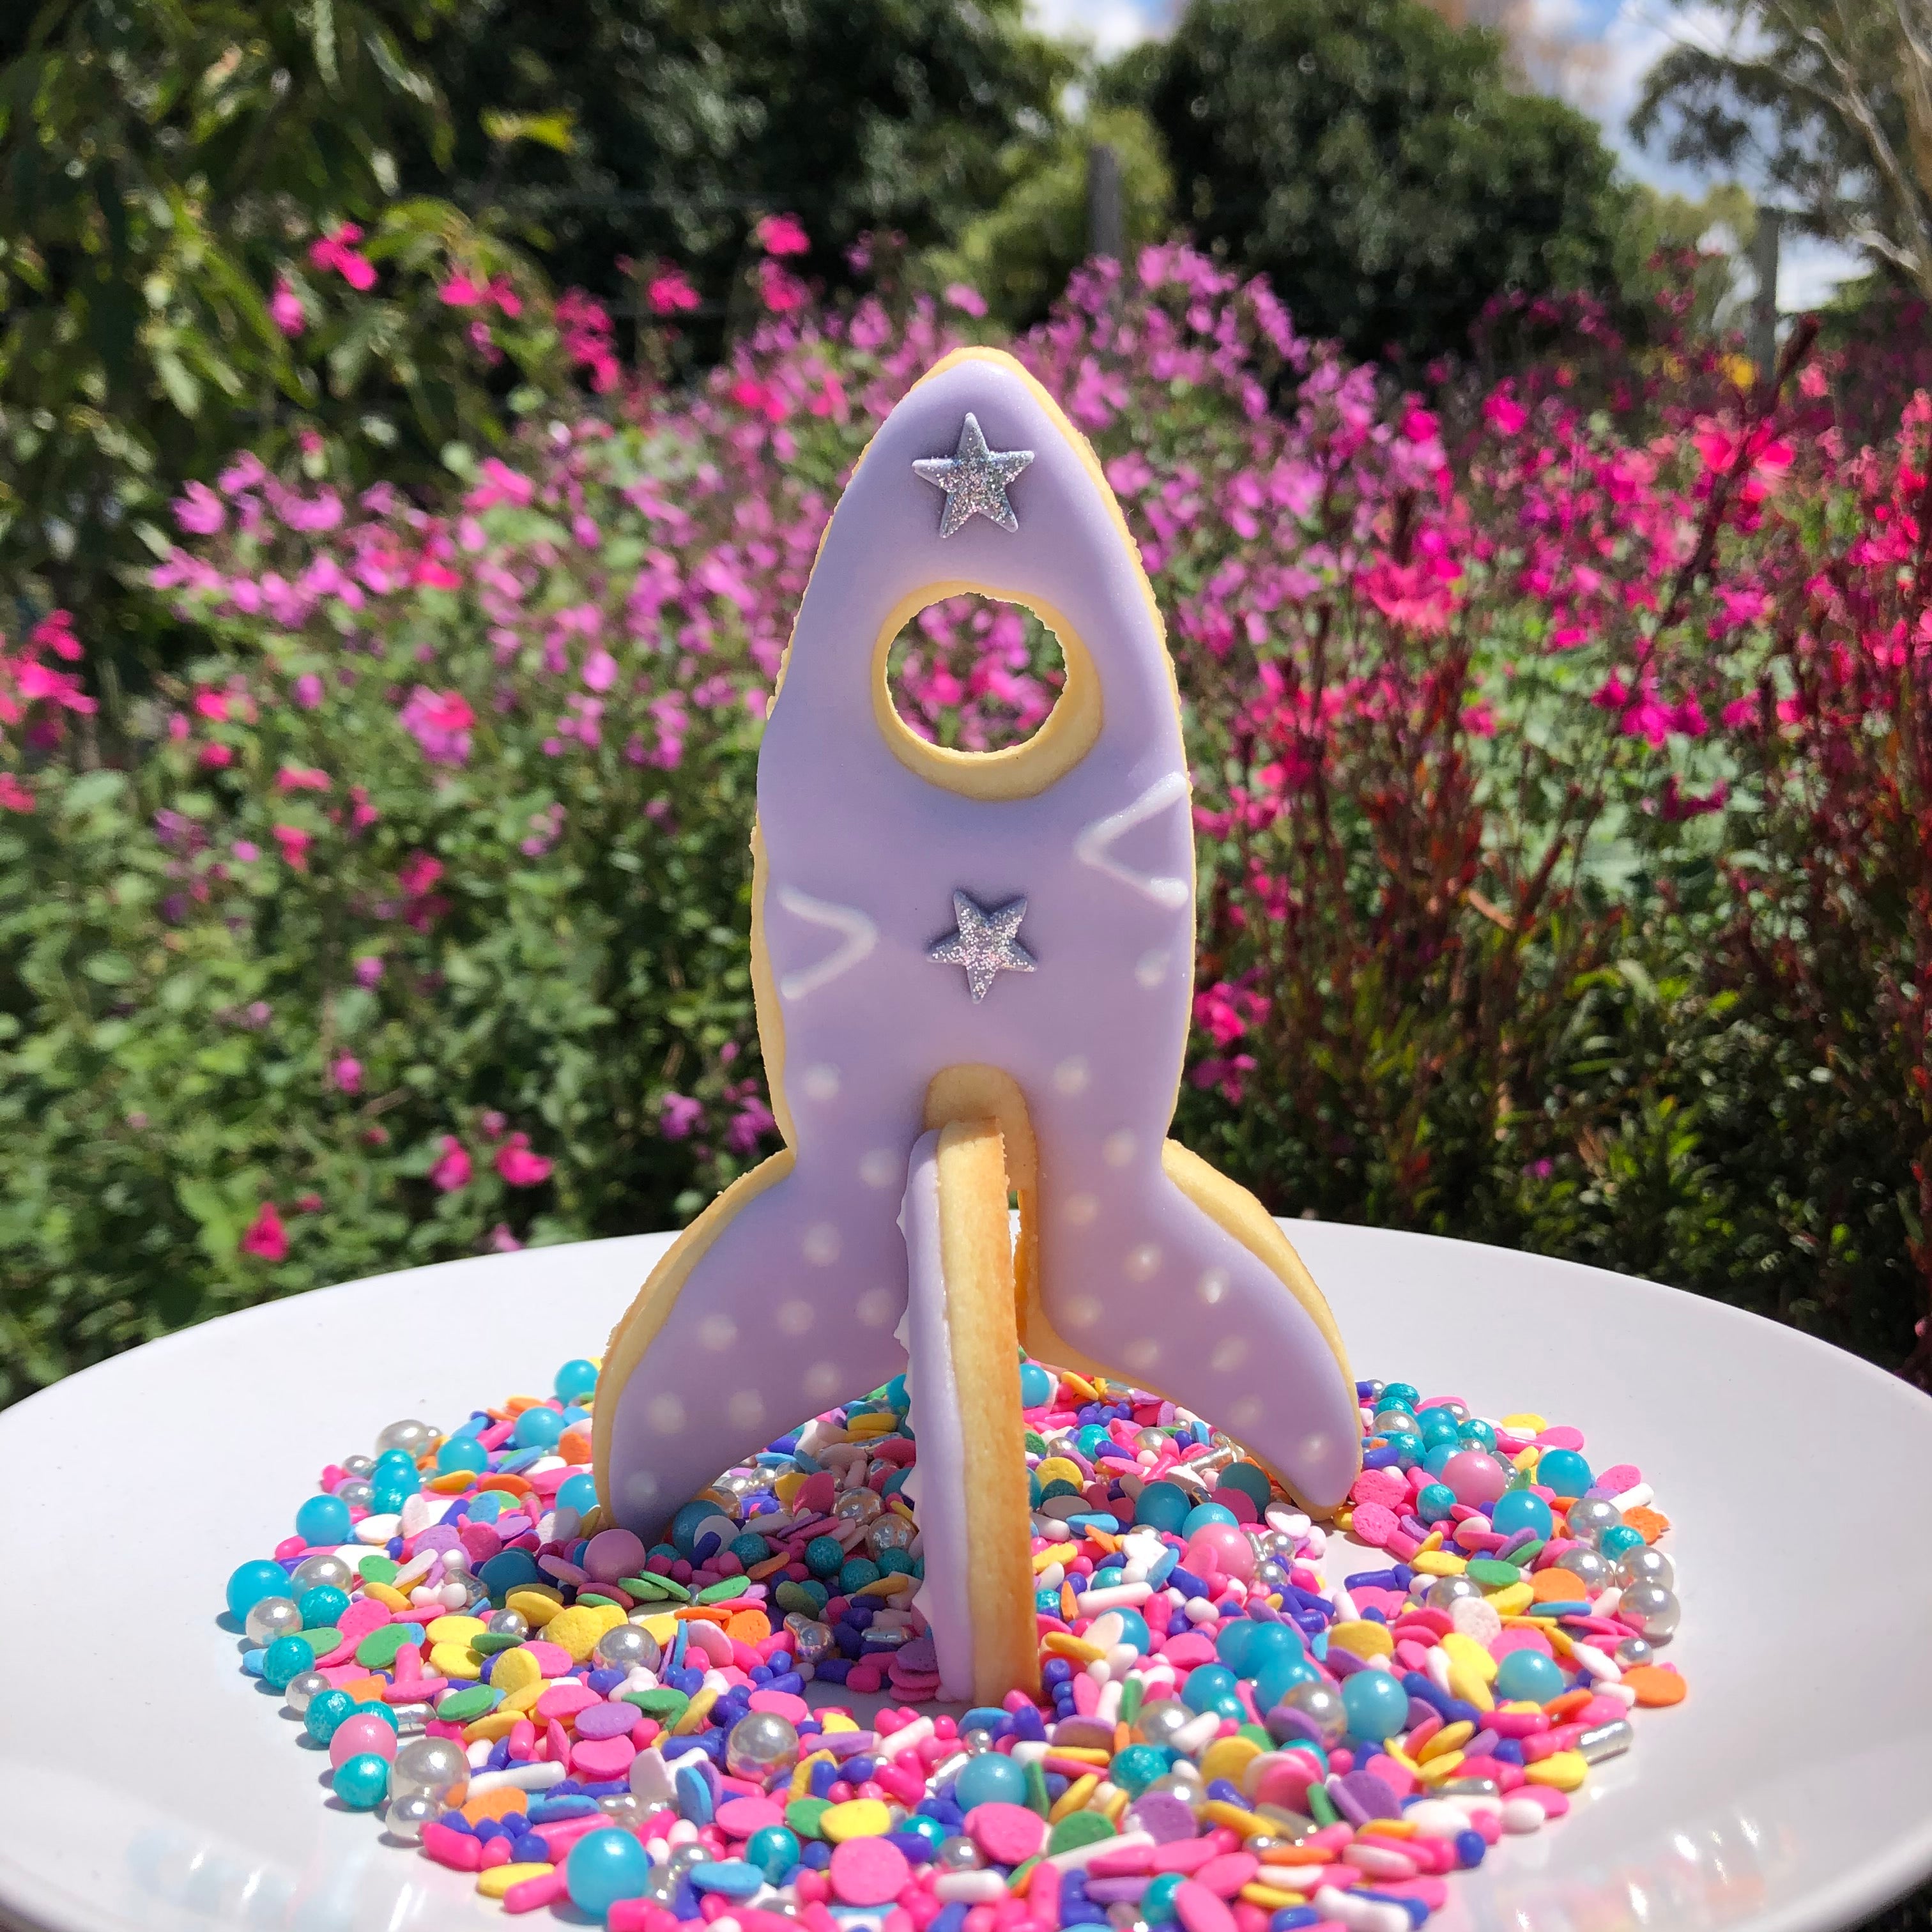 Spaceship/ Rocket Cookie Cutter -  Australia